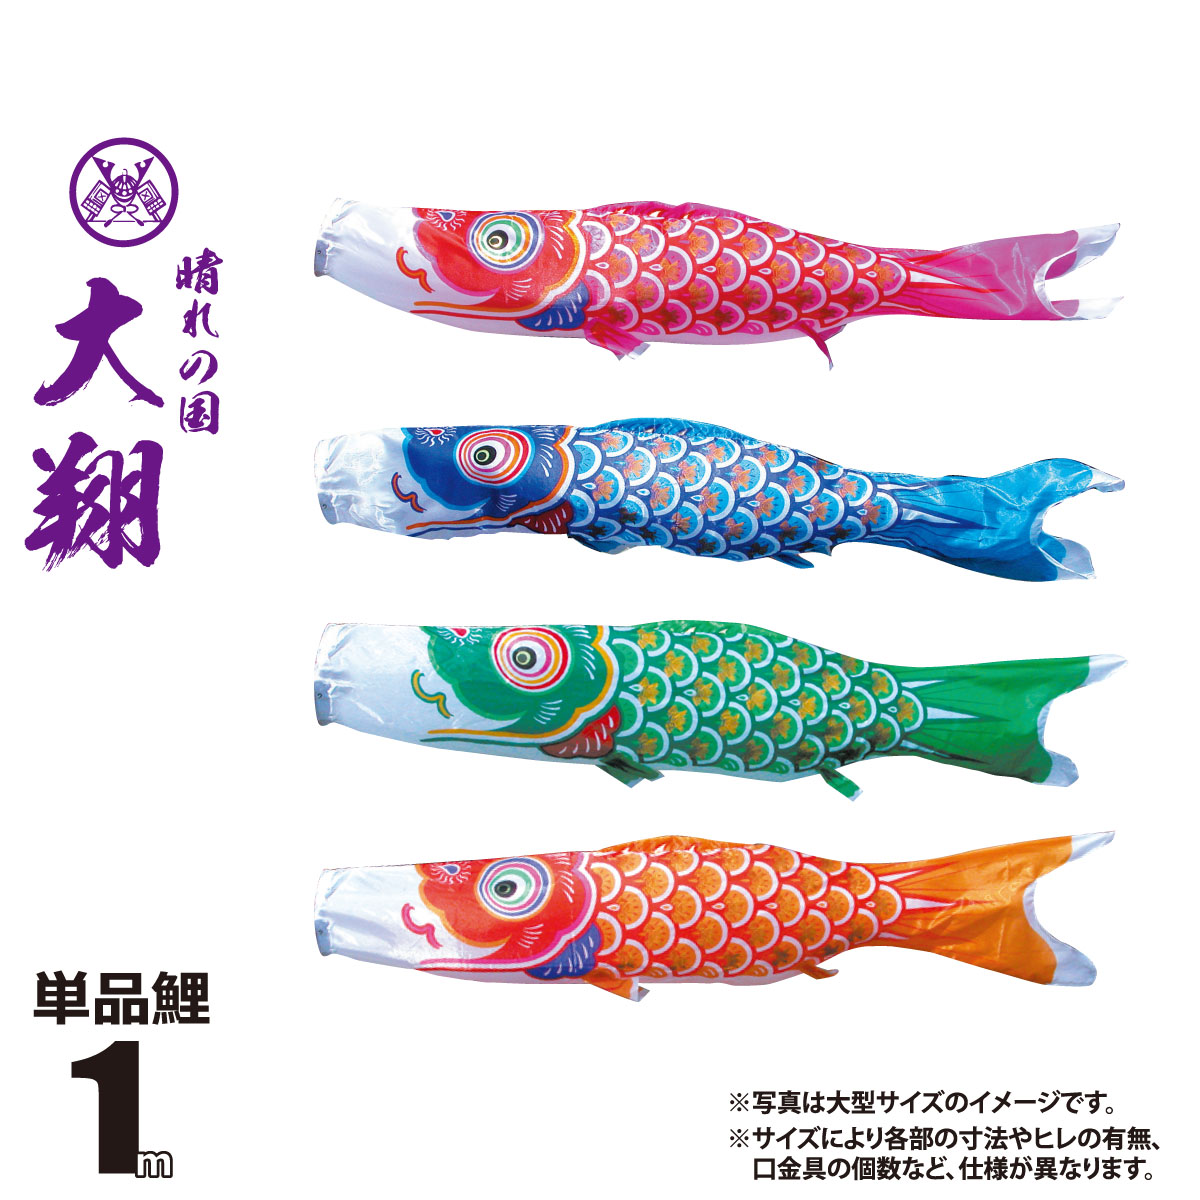 【楽天市場】鯉のぼり 単品 真・太陽 1m 口金具付き カラー 赤鯉|青 